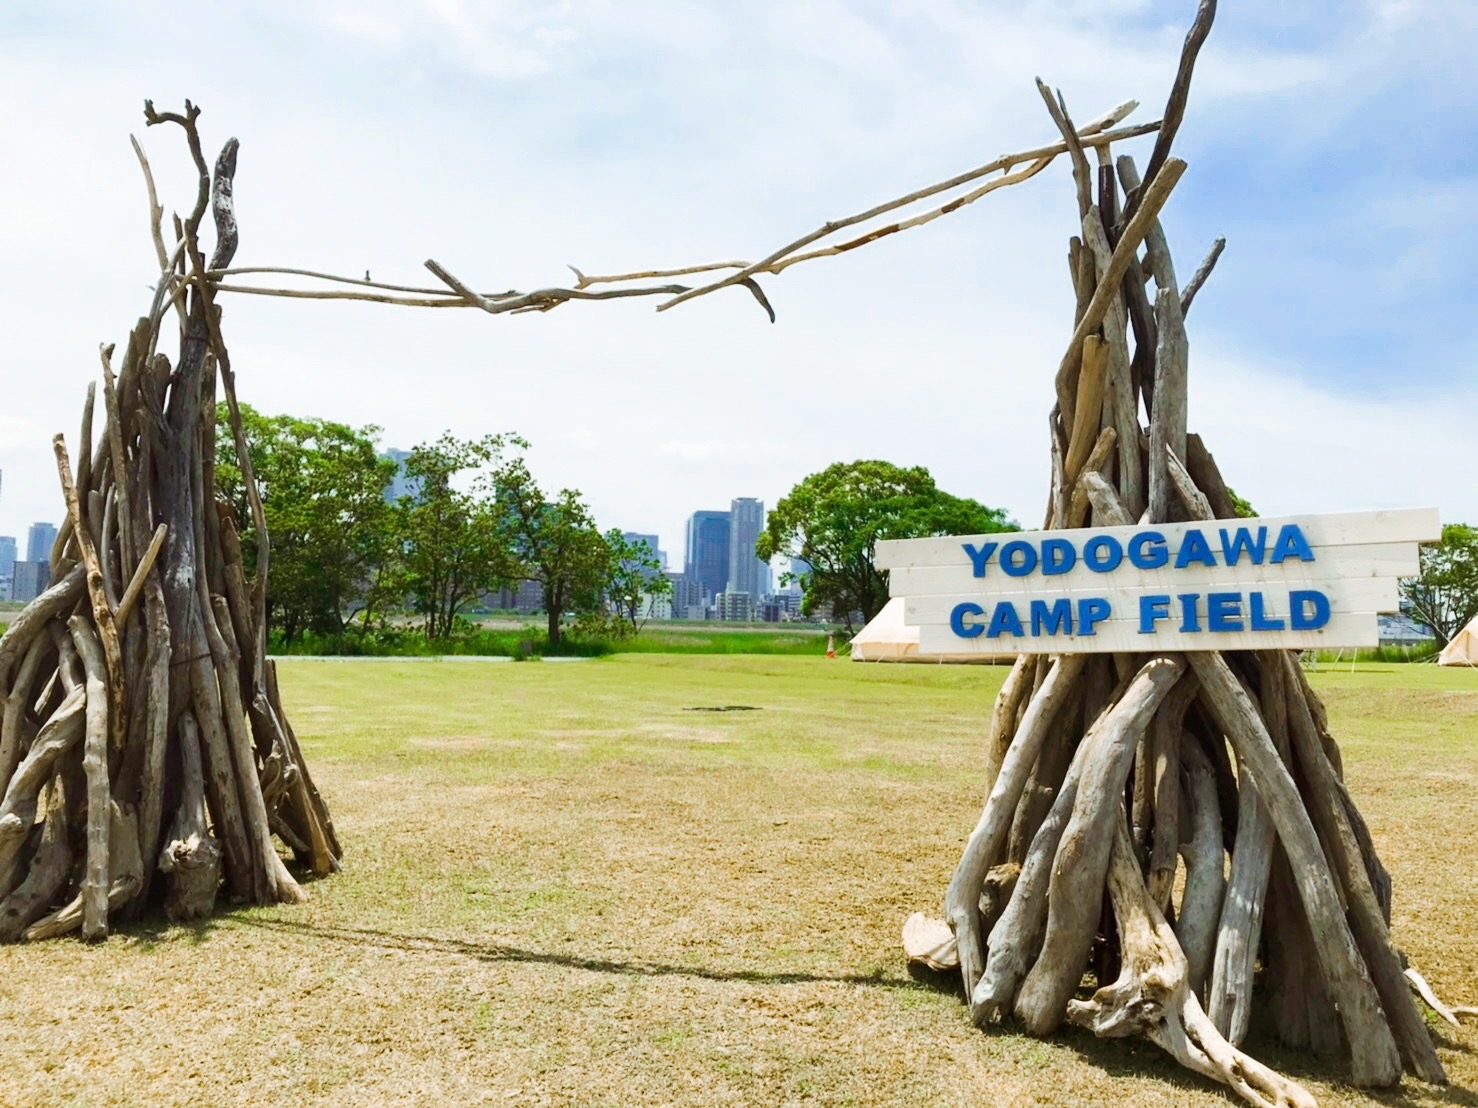 YODOGAWA CAMP FIELD 入口２|YODOGAWA CAMP FIELD 入口|YODOGAWA CAMP FIELD コンテナ